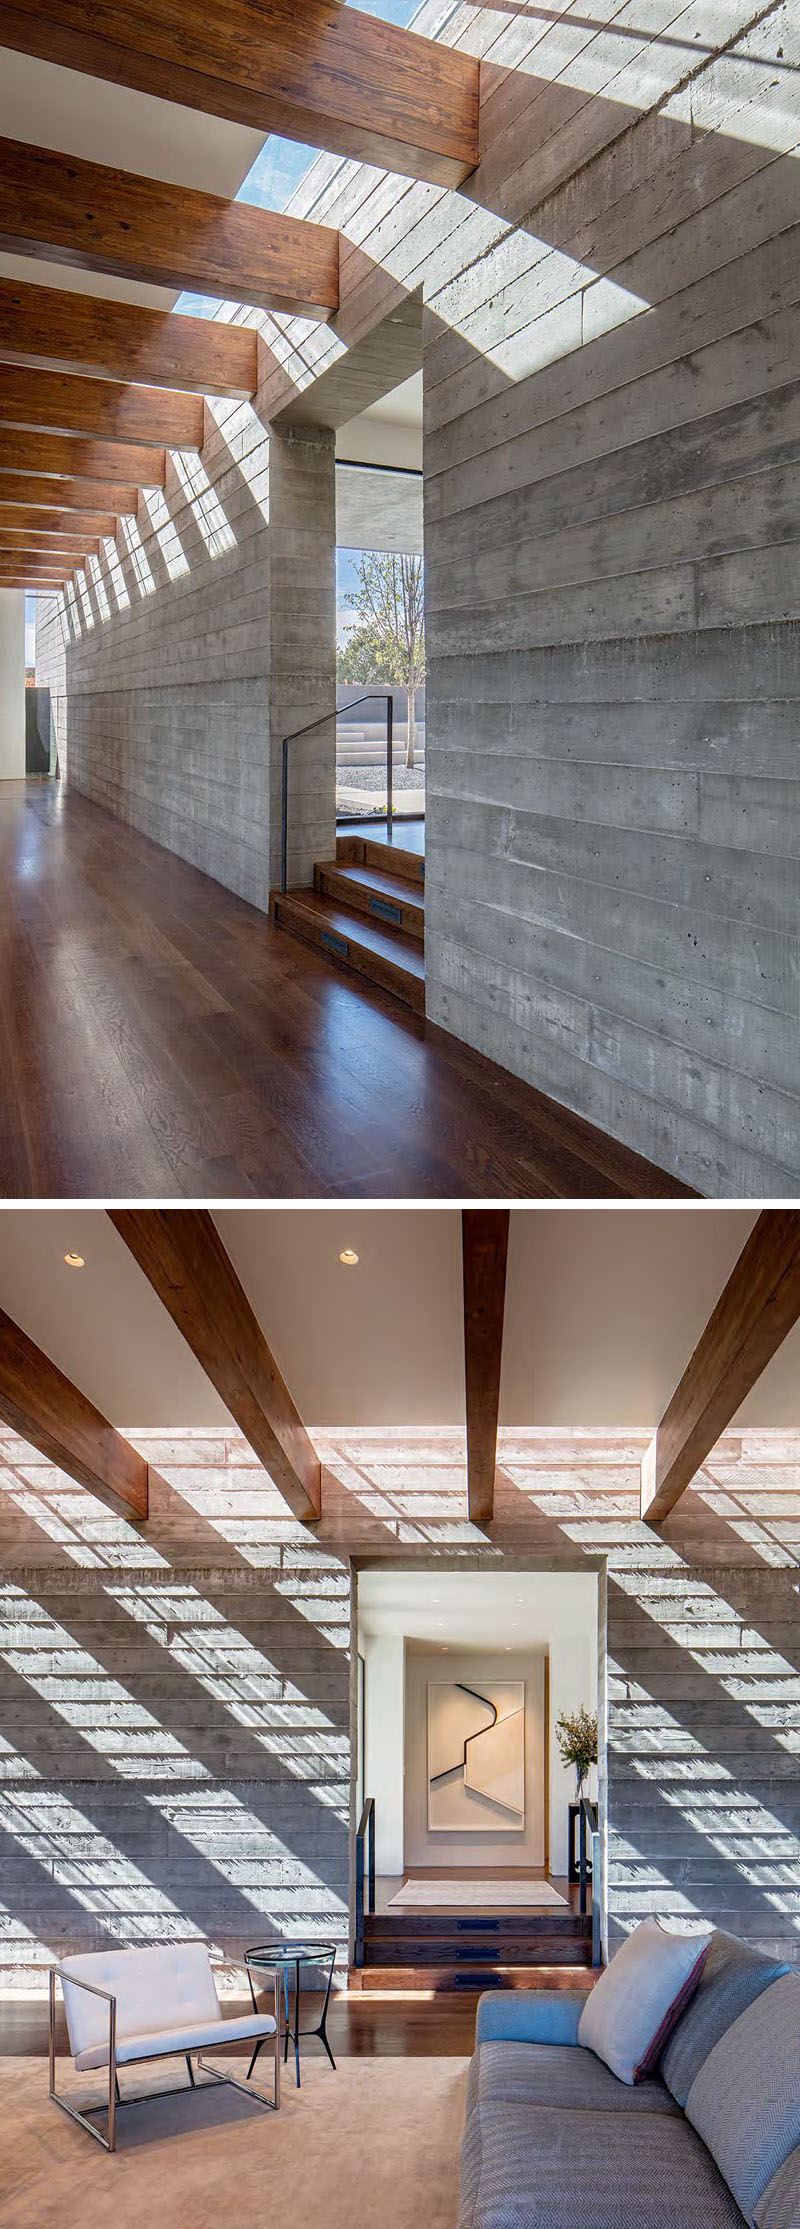 «Specht Architects» совсем недавно завершили этот современный дом в Санта-Фе, Нью-Мексико, который организован вокруг двух перпендикулярных бетонных стен, сформированных при помощи досок.